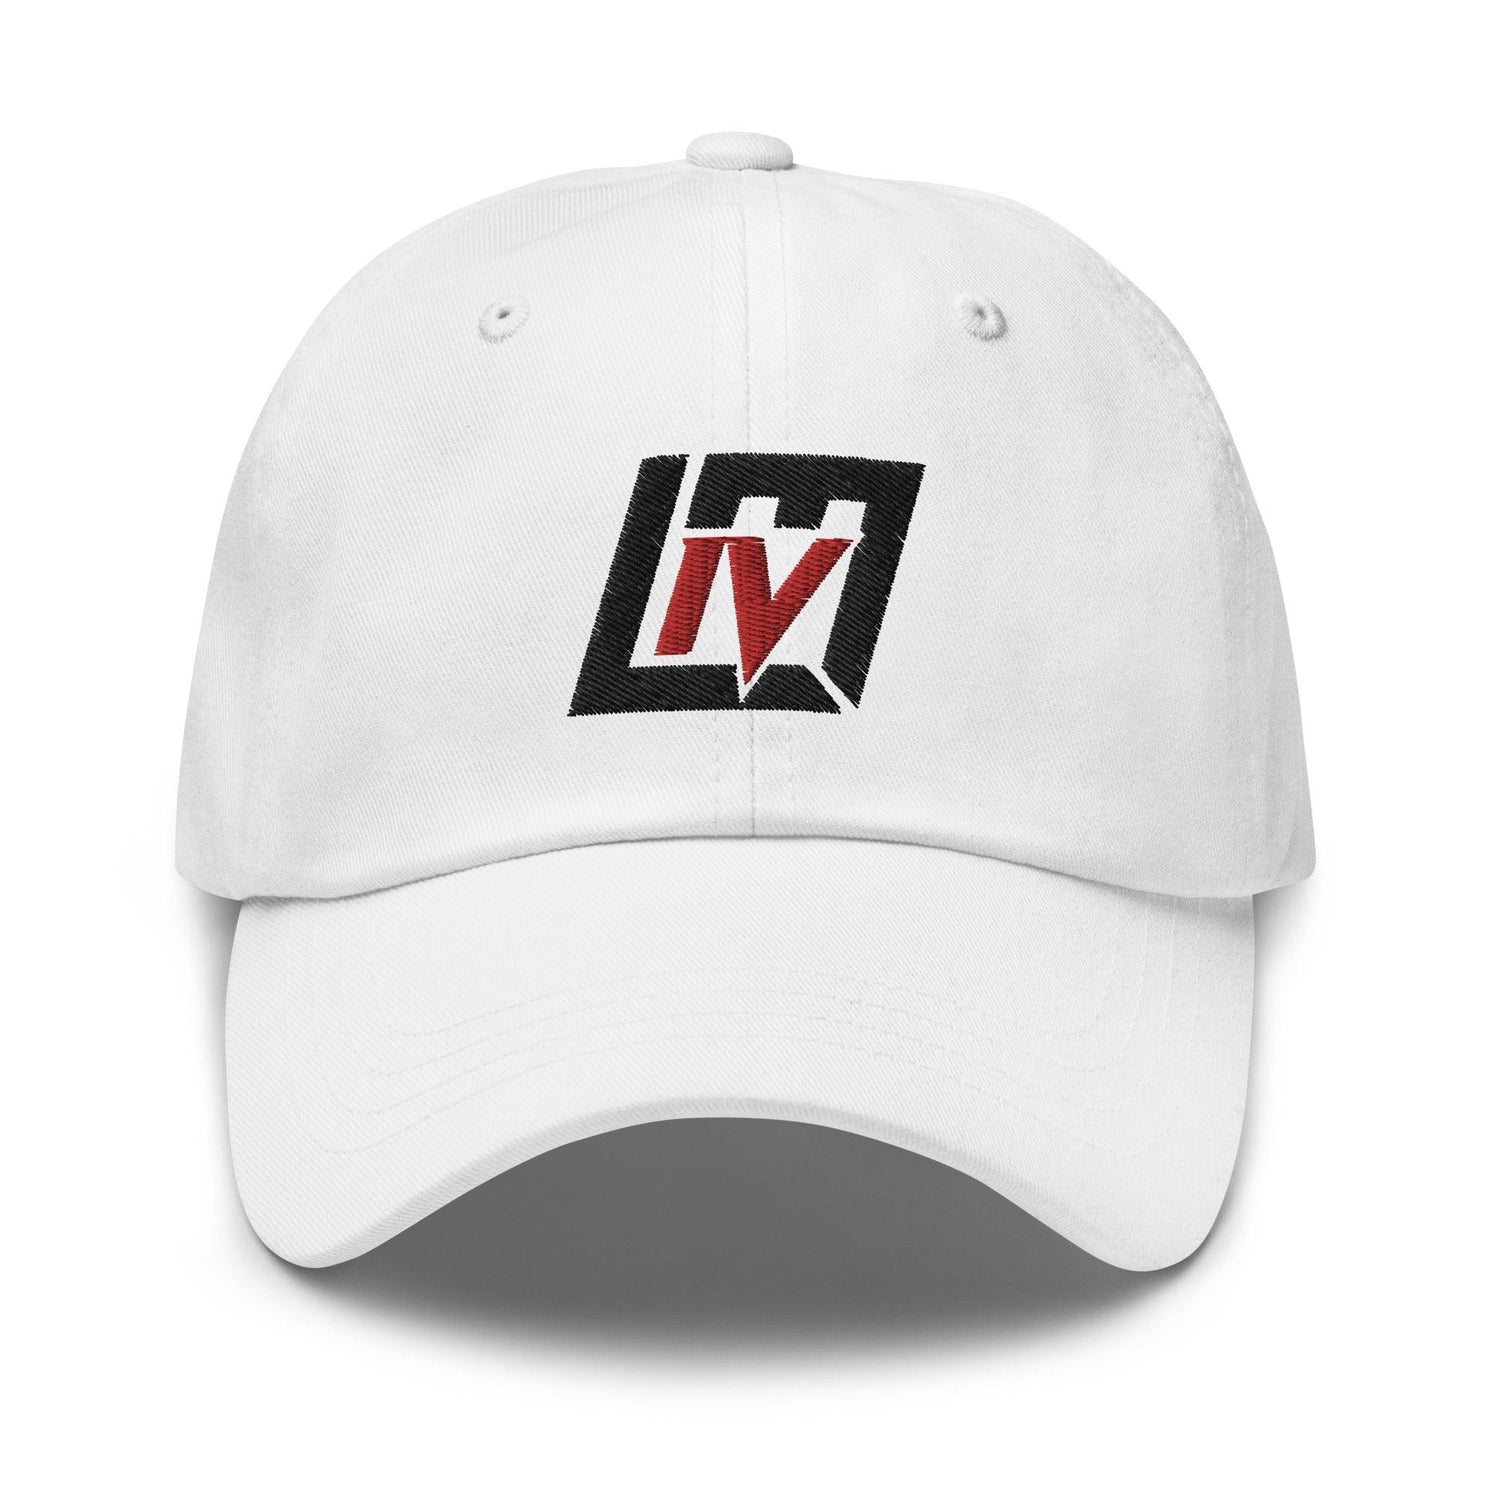 Lorenzo Mauldin IV "Elite" hat - Fan Arch